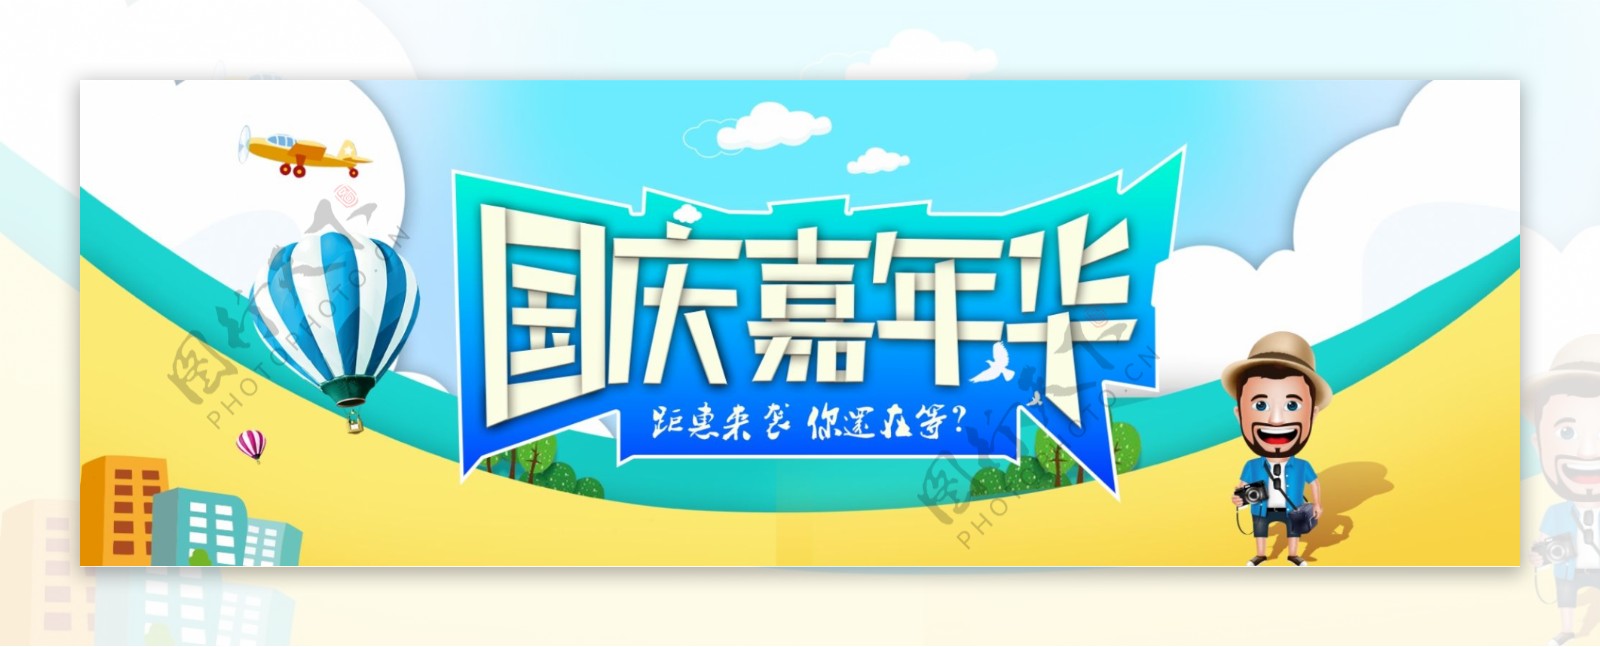 淘宝天猫电商国庆中秋促销活动卡通海报banner模板设计背景模板字体设计